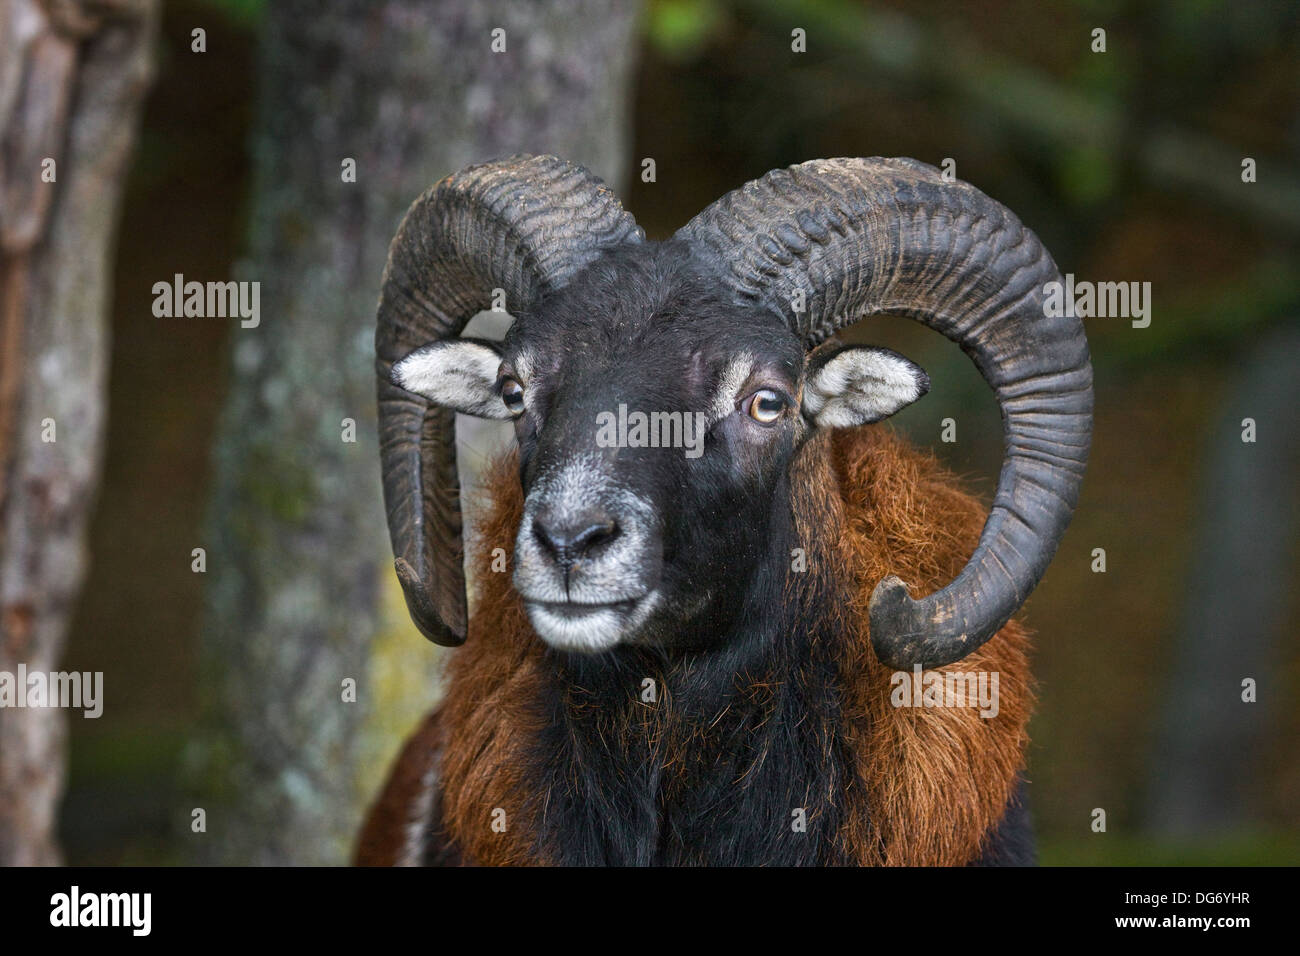 European mouflon (Ovis gmelini musimon / Ovis ammon / Ovis orientalis musimon) ram close up Stock Photo